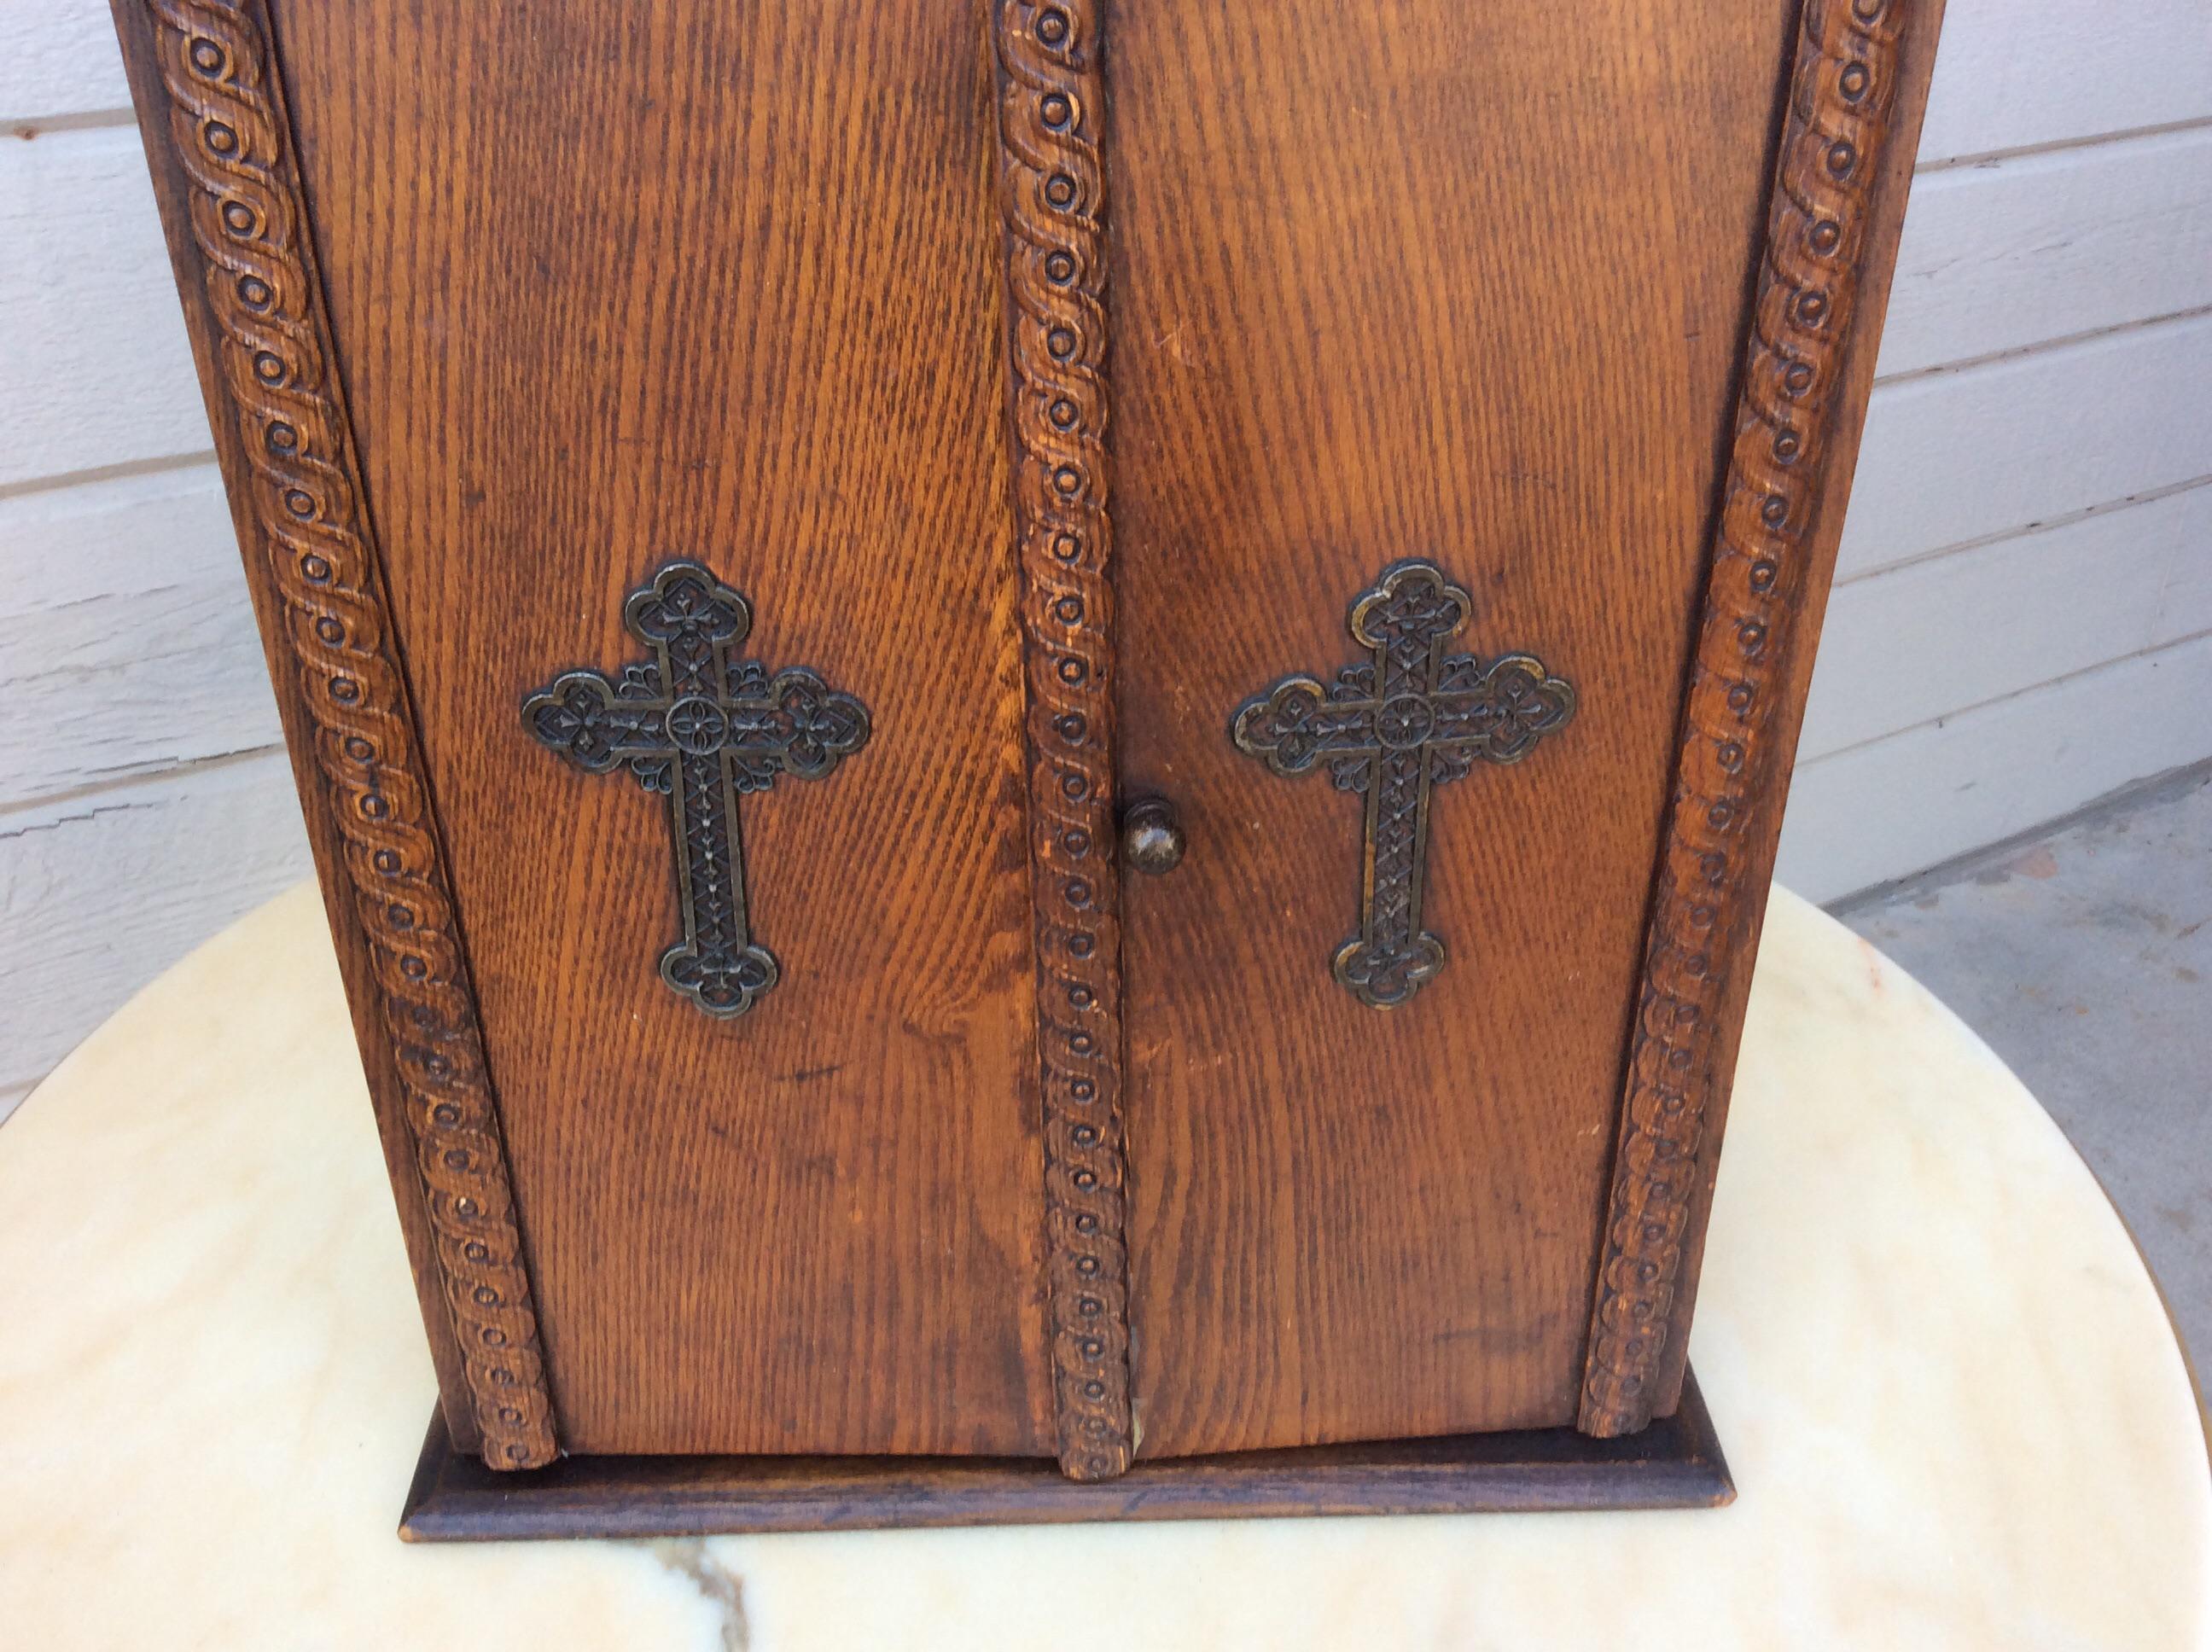 Cette armoire à viatique et boîte d'autel domestique en bois du début du XXe siècle est ornée de détails et de deux croix en métal sur le devant. Ce cabinet d'autel était autrefois utilisé pour les derniers sacrements de la Church s et contenait les